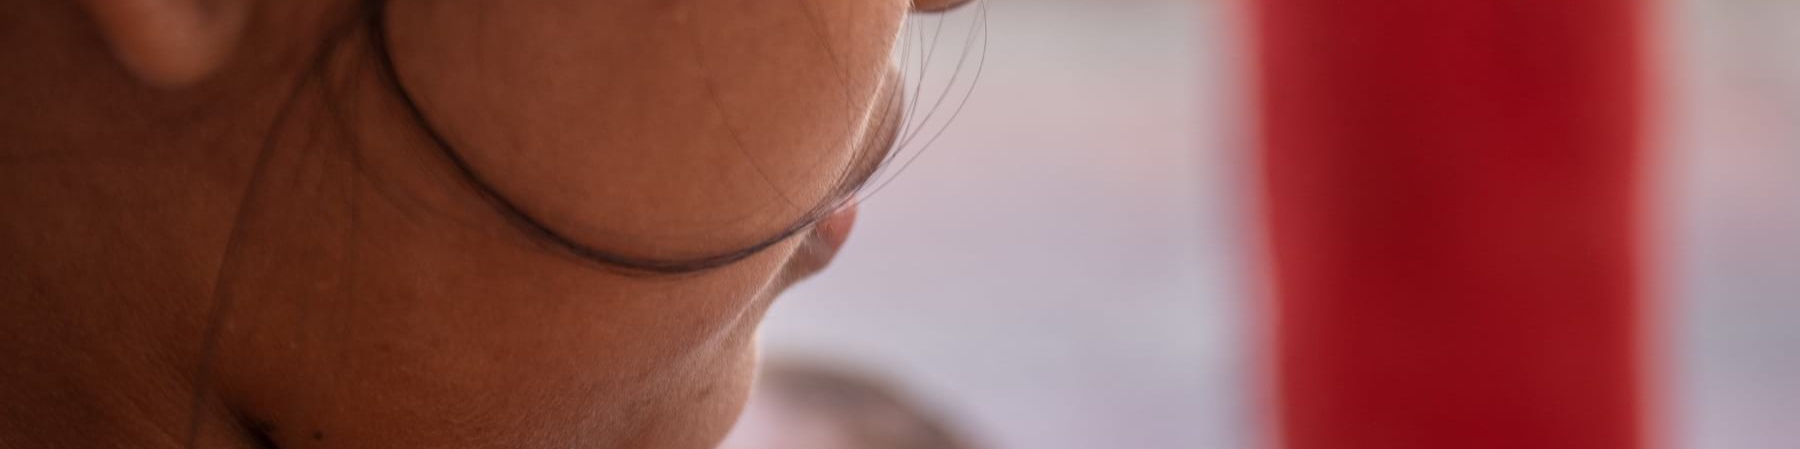 Inquadratura di una parte del volto di una donna, focalizzato sulla guancia per non farla riconoscere. Sullo sfondo il viso di un neonato